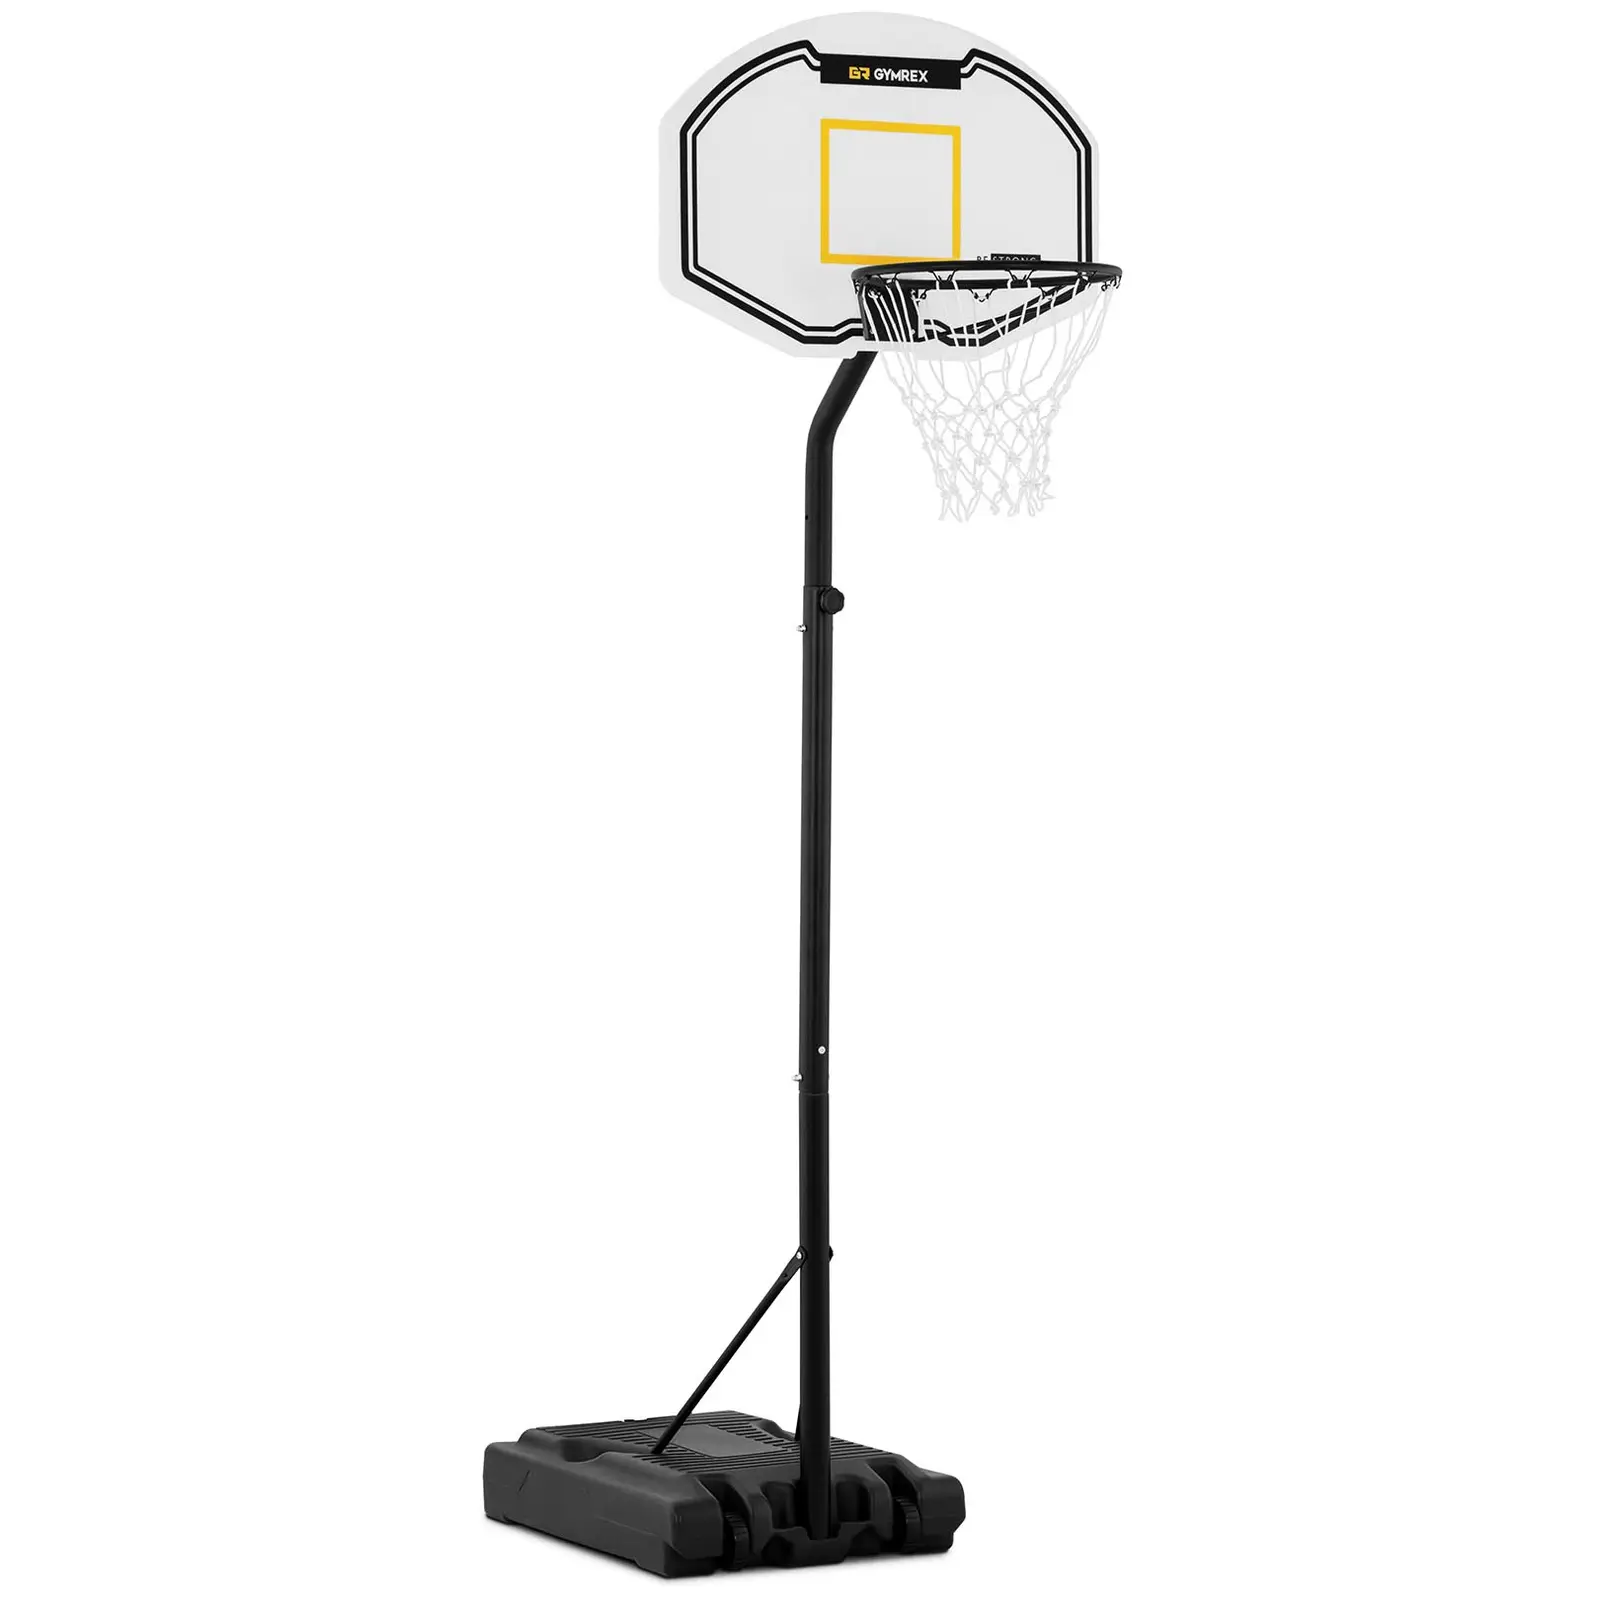 Krepšinio stovas - reguliuojamas aukštis - nuo 190 iki 260 cm